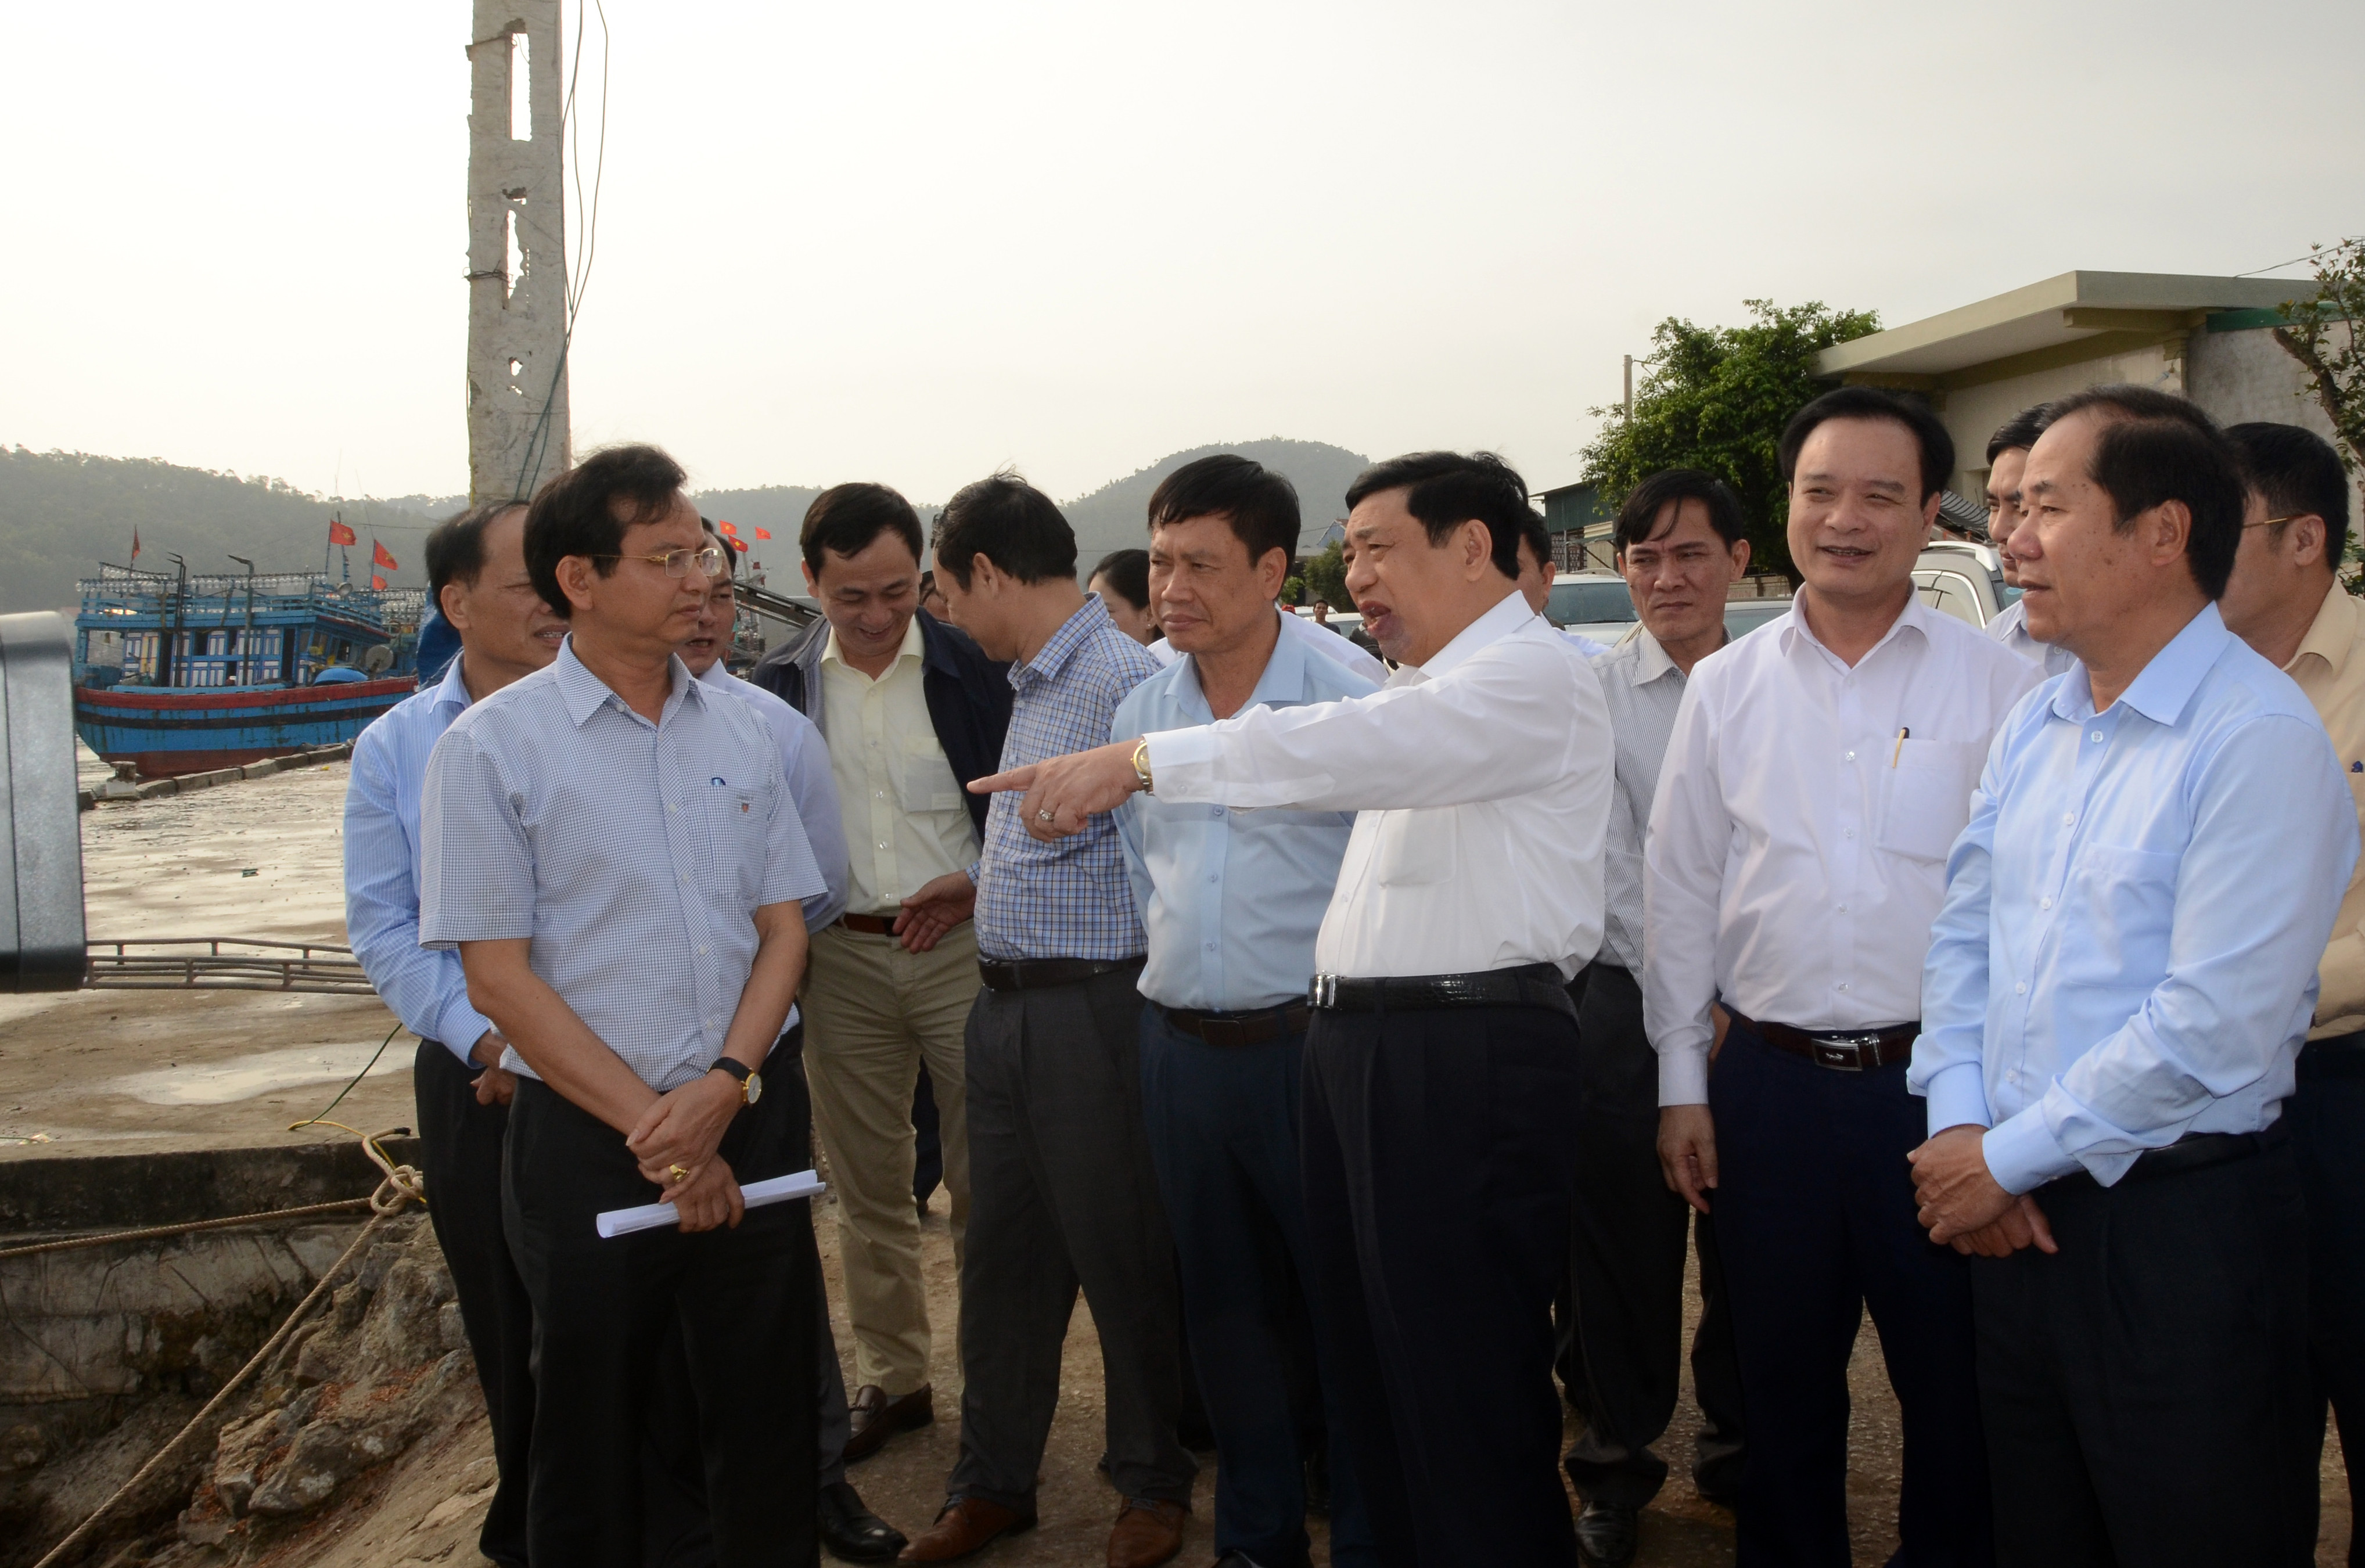 Kiểm tra tại hiện trường, đồng chí Chủ tịch UBND tỉnh yêu cầu các sở, ban, ngành và huyện Quỳnh Lưu tập trung nguồn lực đầu tư, nâng cấp cảng cá, tạo điều kiện cho bà con ngư dân yên tâm vươn khơi bám biển